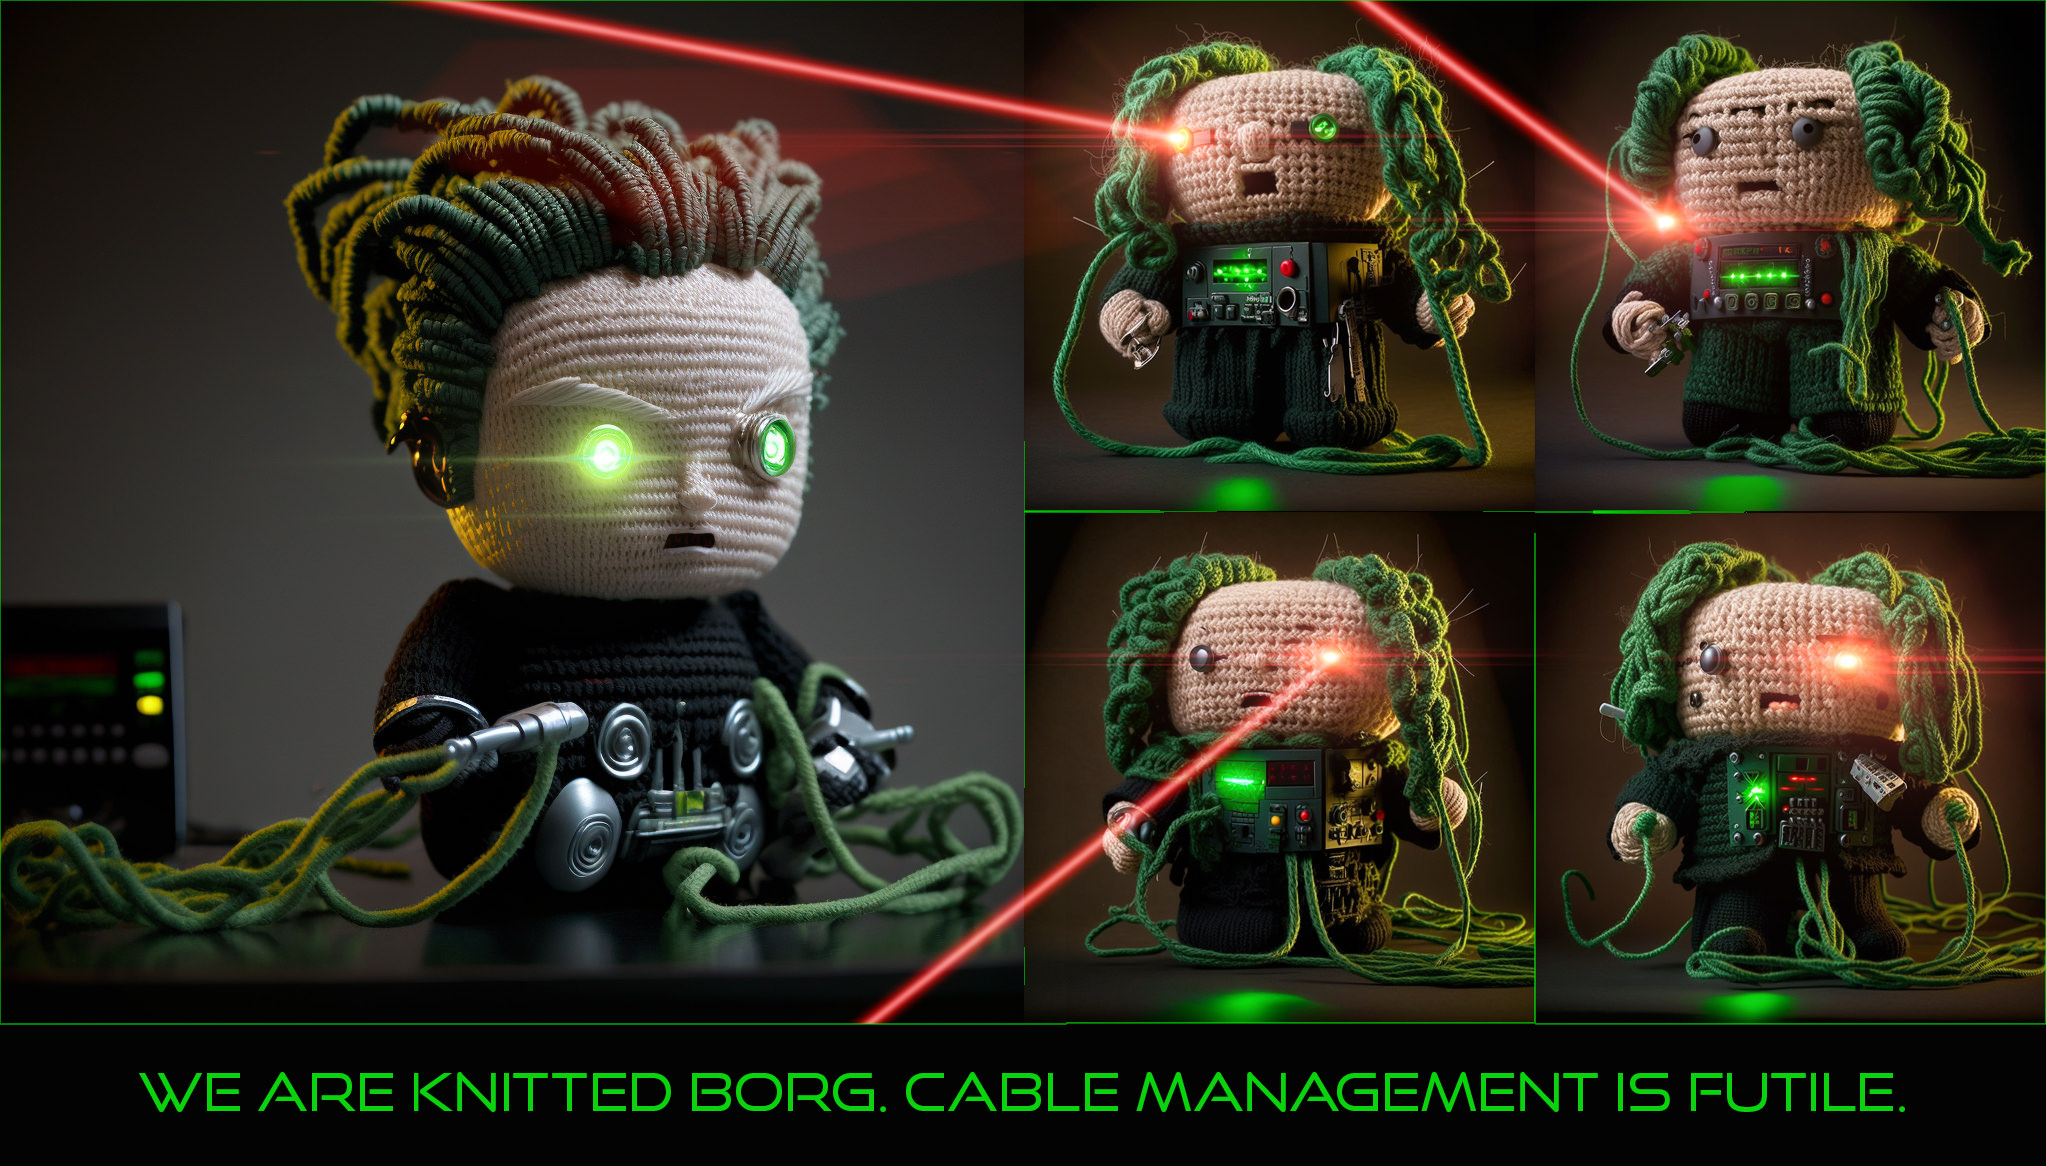 "Wir sind gestrickte Borg. Kabelmanagement ist zwecklos." – Meine Idee mit einigen Midjourney-Versuchen und dann Photoshop umgesetzt. Die „Zukunst“ – Widerstand ist zwecklos